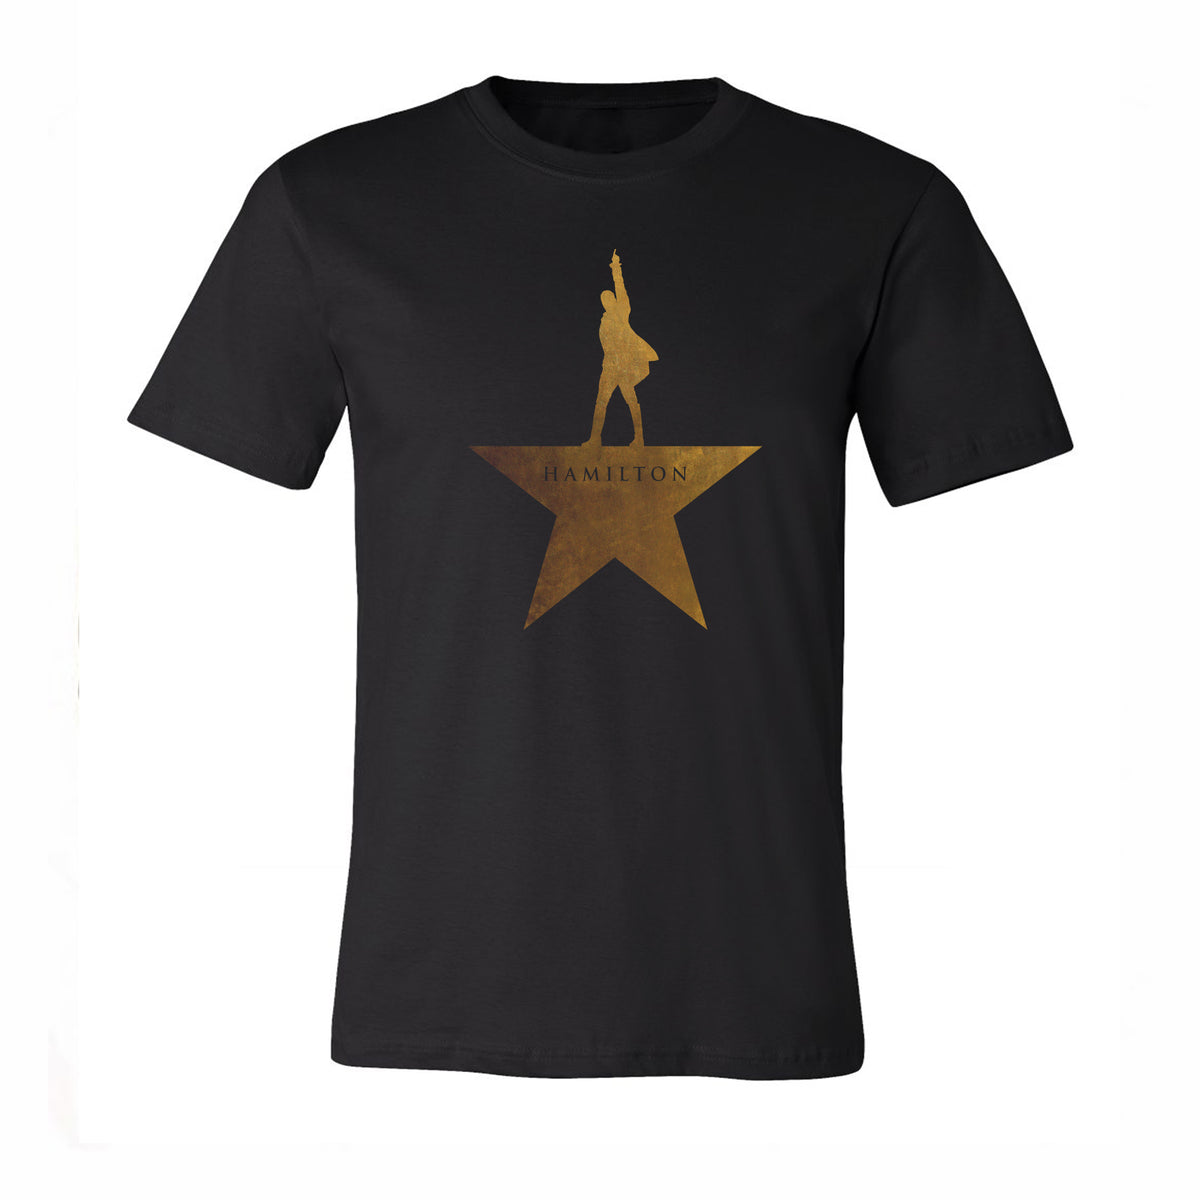 HAMILTON Gold Star T-Shirt – Creative 